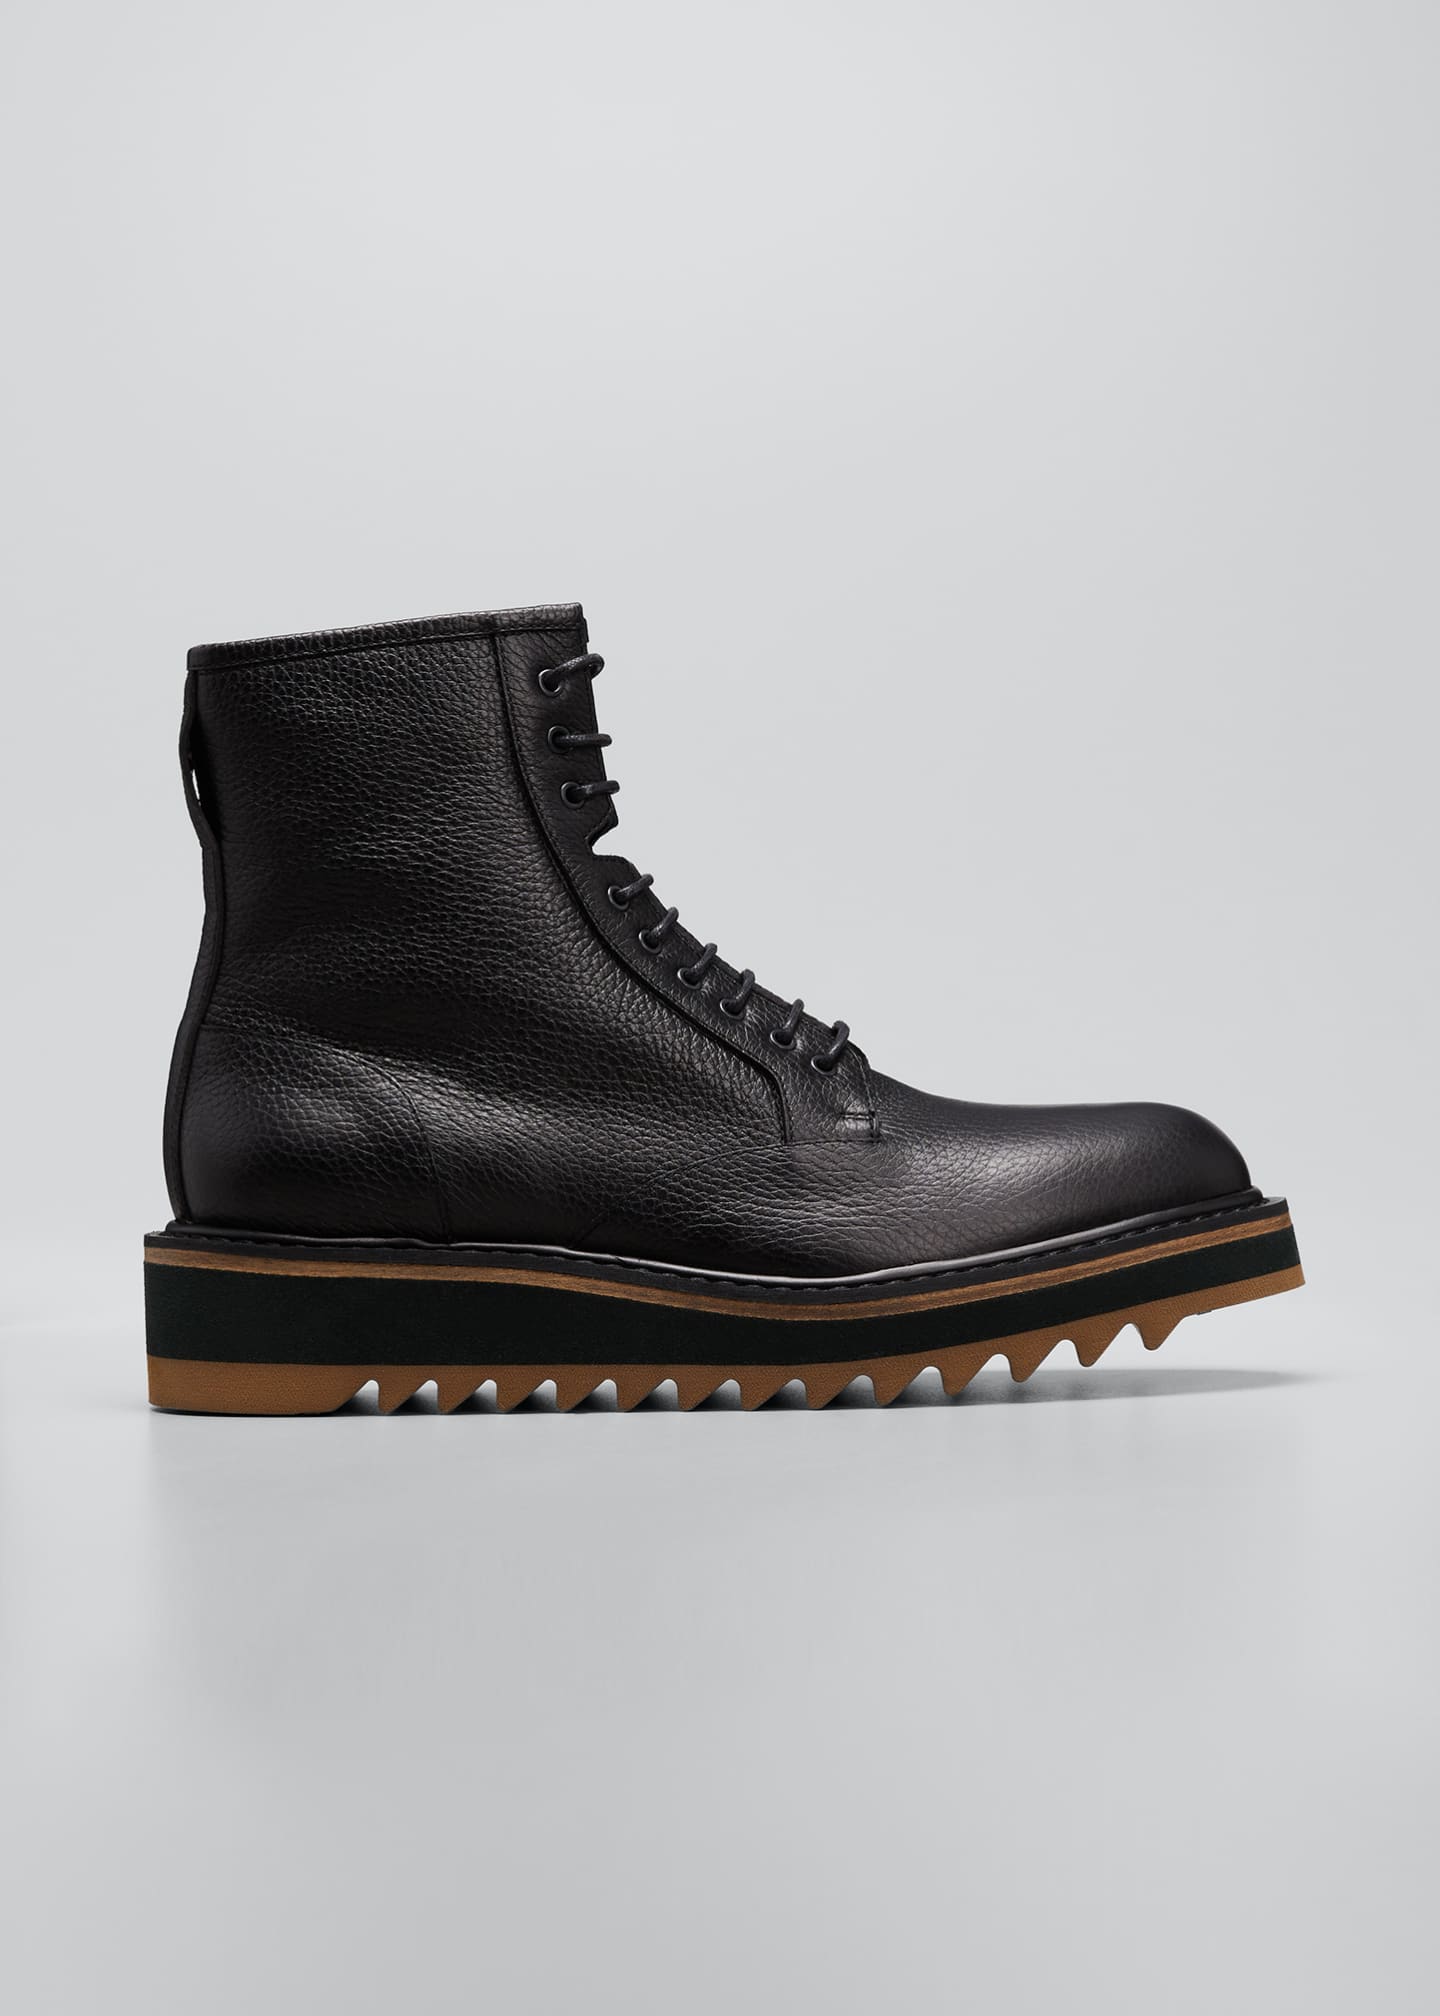 Dries Van Noten Men's Leather Lace-Up Flatform Boots - Bergdorf Goodman